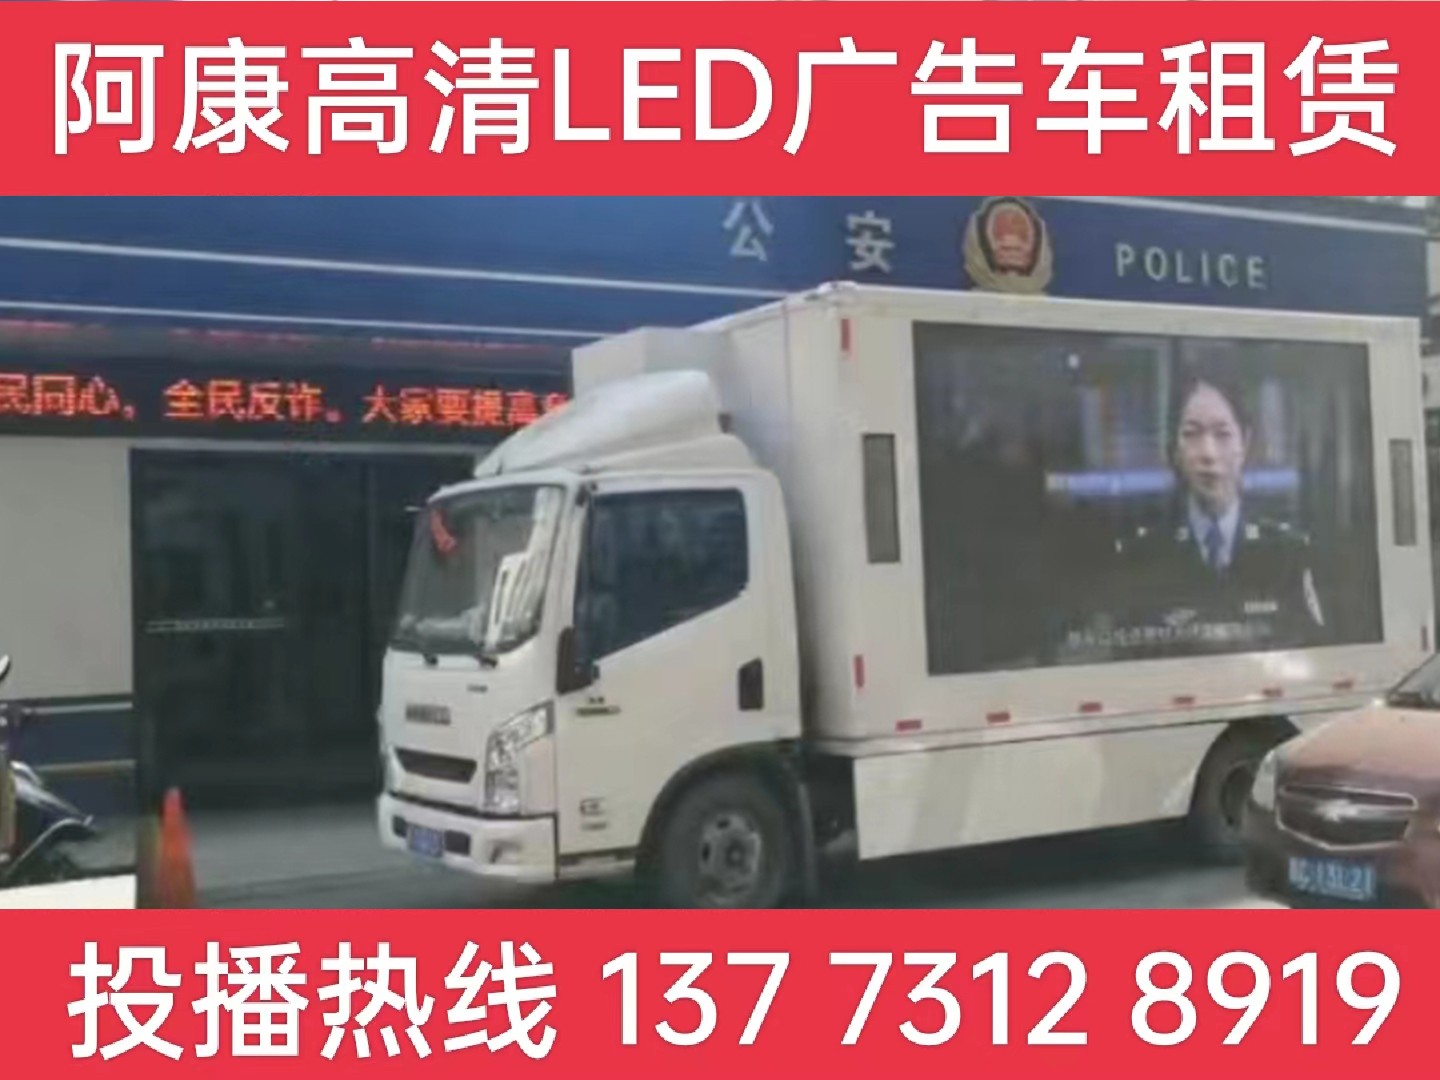 宝应LED广告车租赁